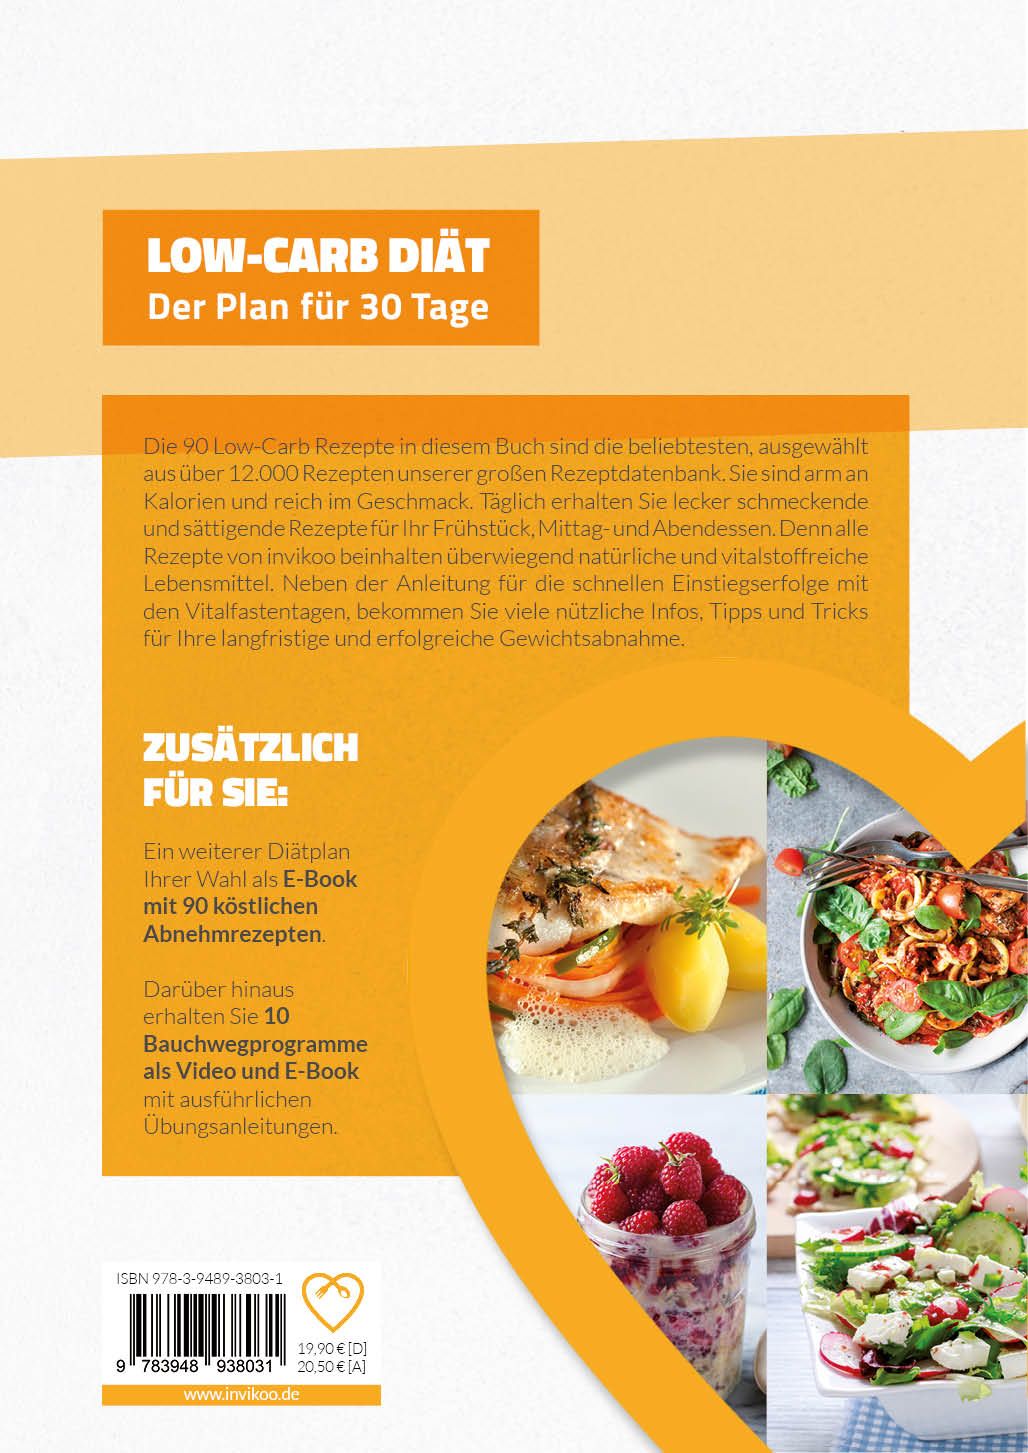 Low Carb Diätplan - Ernährungsplan zum Abnehmen für 30 Tage